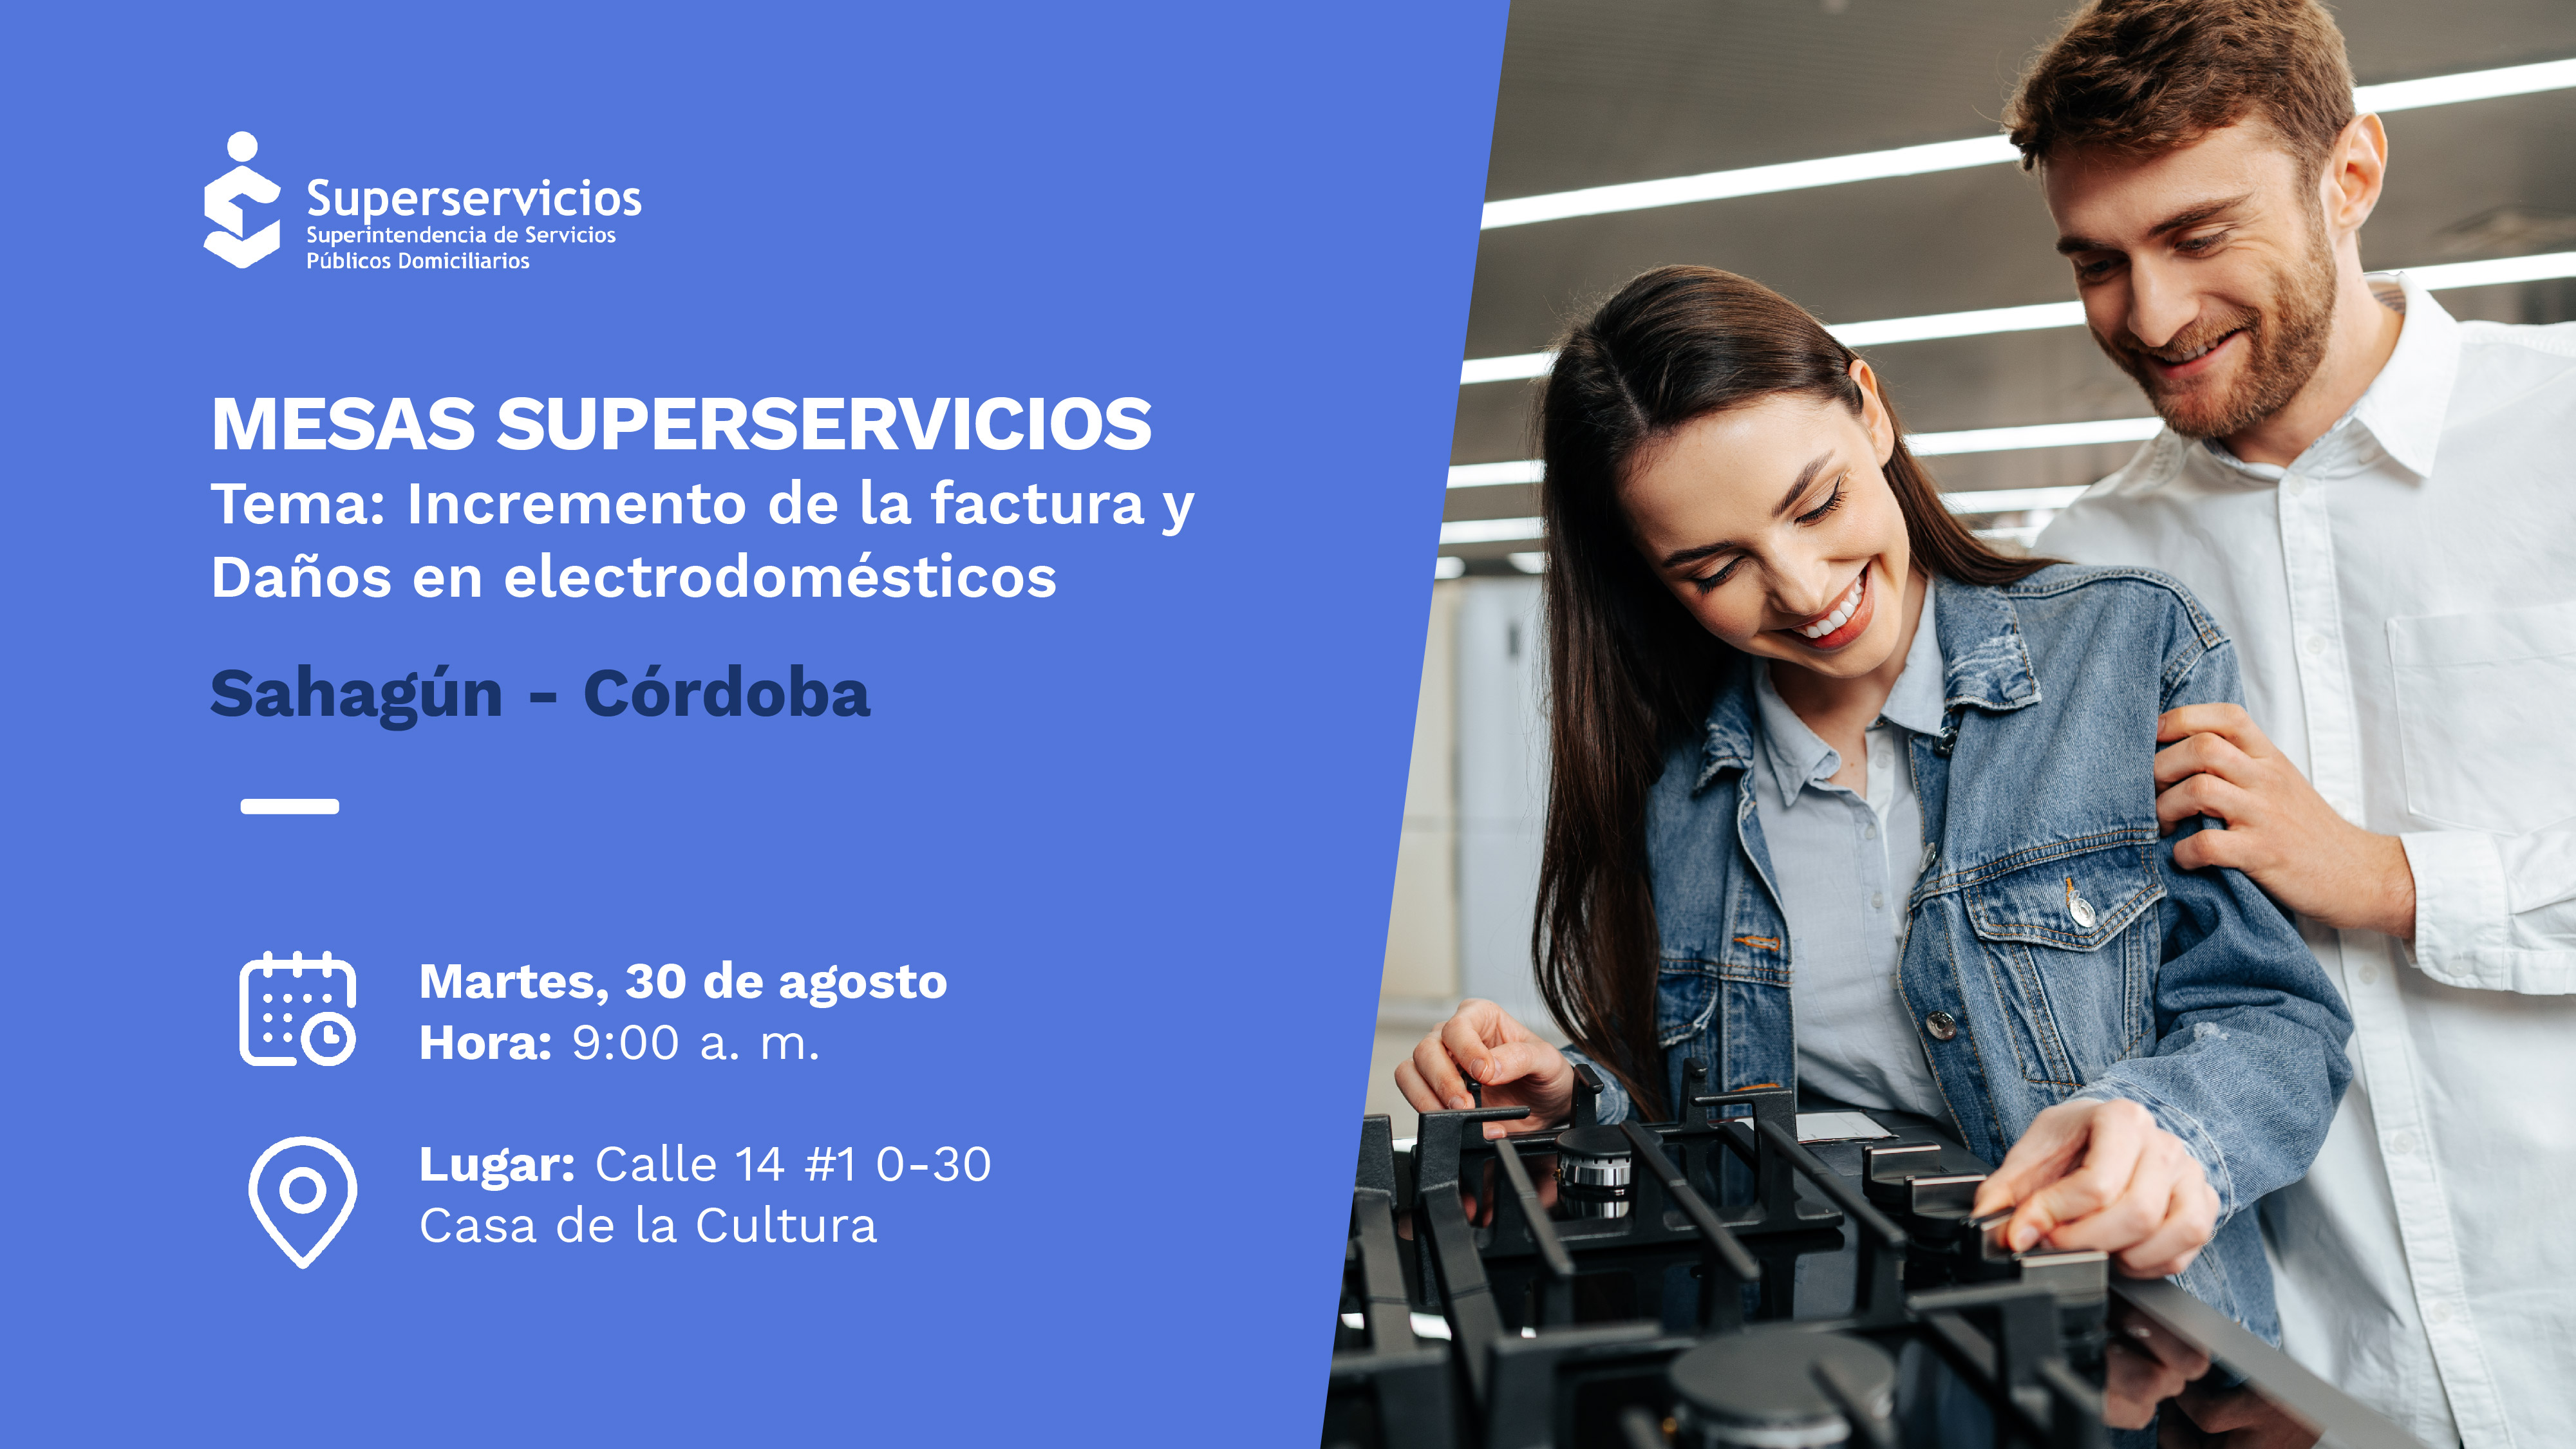 Mesa Superservicios. Hablaremos sobre el incremento de la factura en Sahagún, Córdoba
